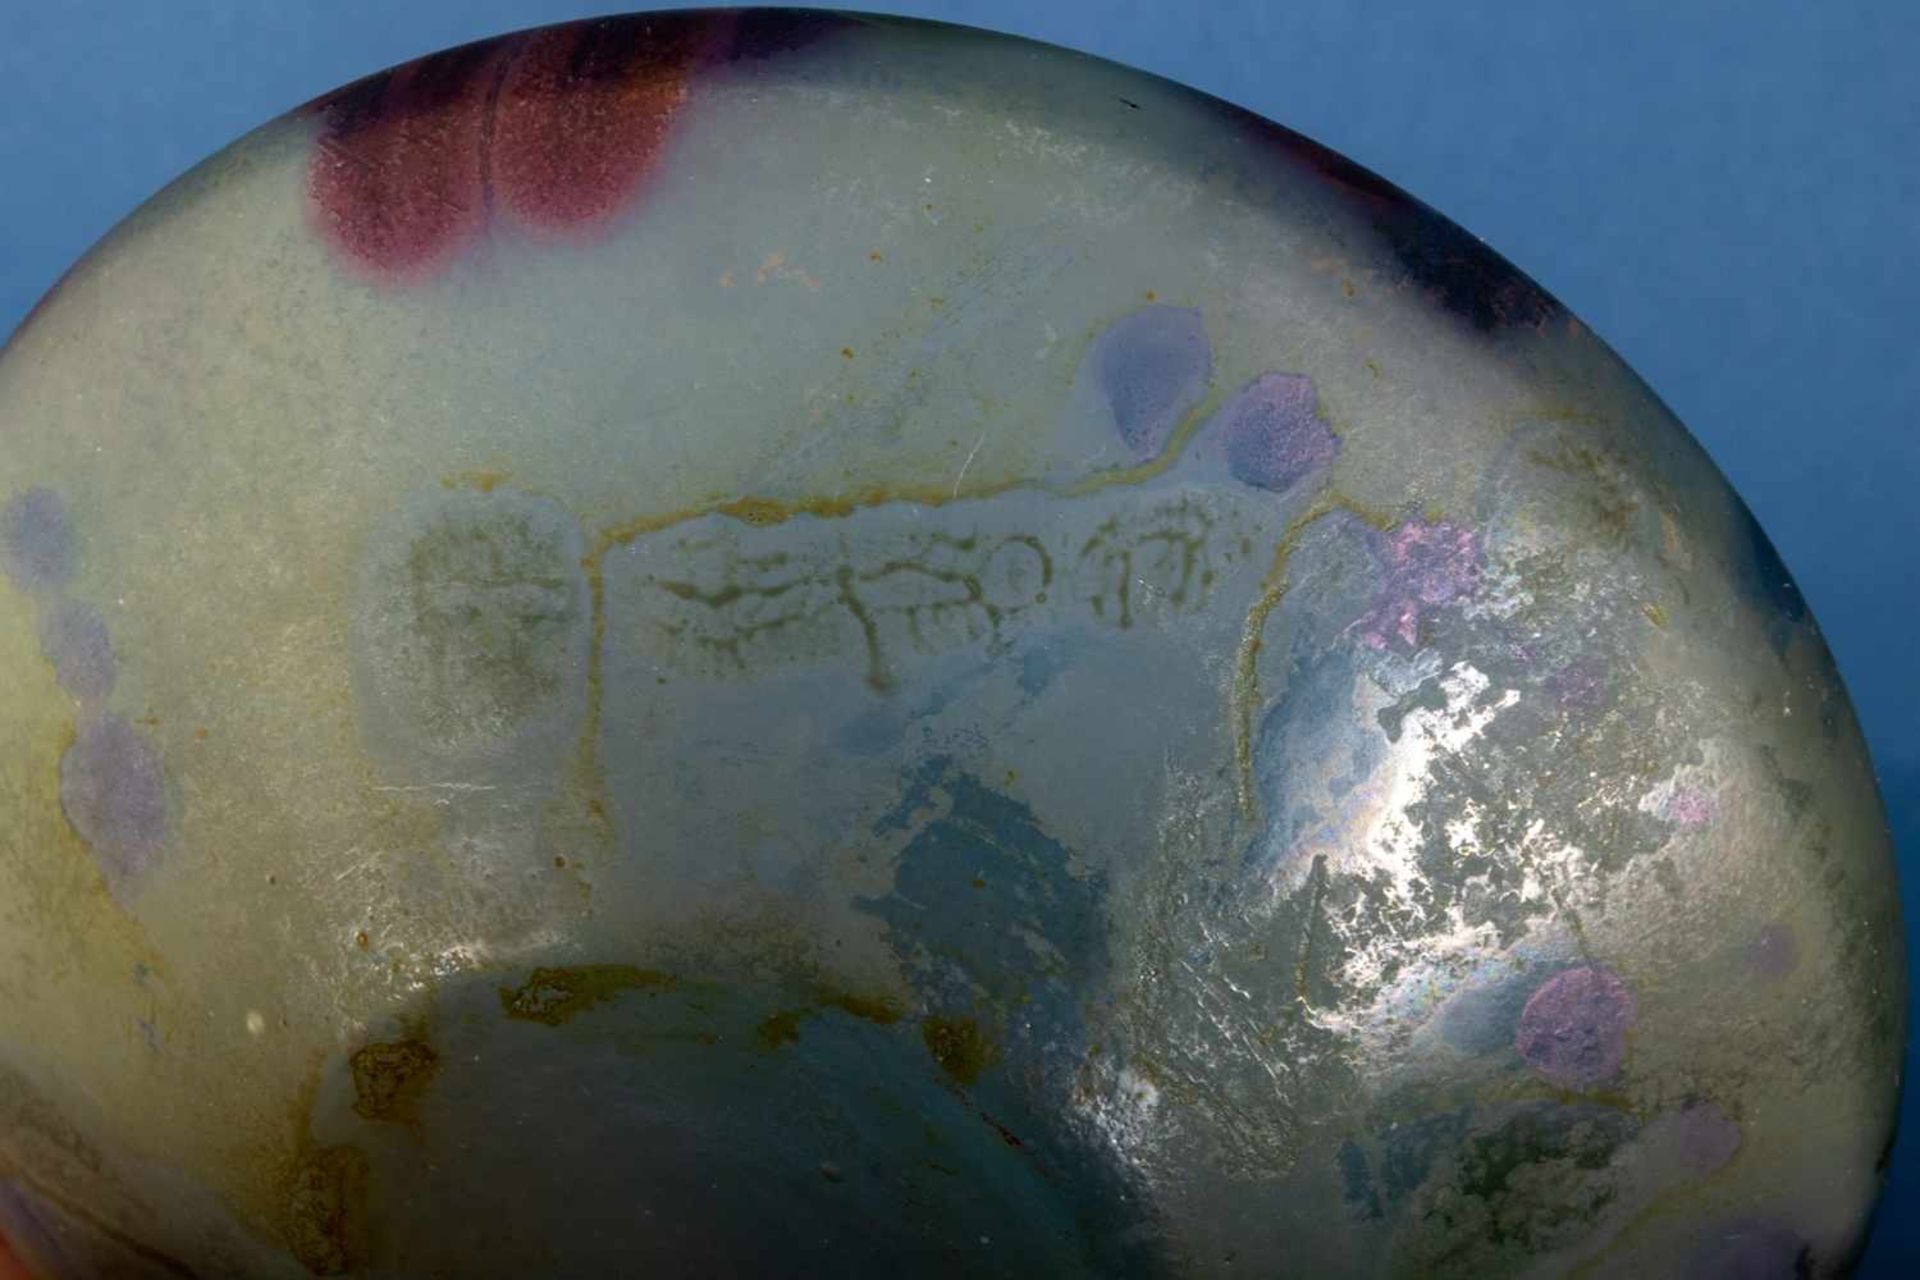 7teiliges Konvolut versch. Glasarbeiten, teilweise signiert, u. a. EISCH-Glas. Versch. Alter, Größen - Bild 36 aus 36